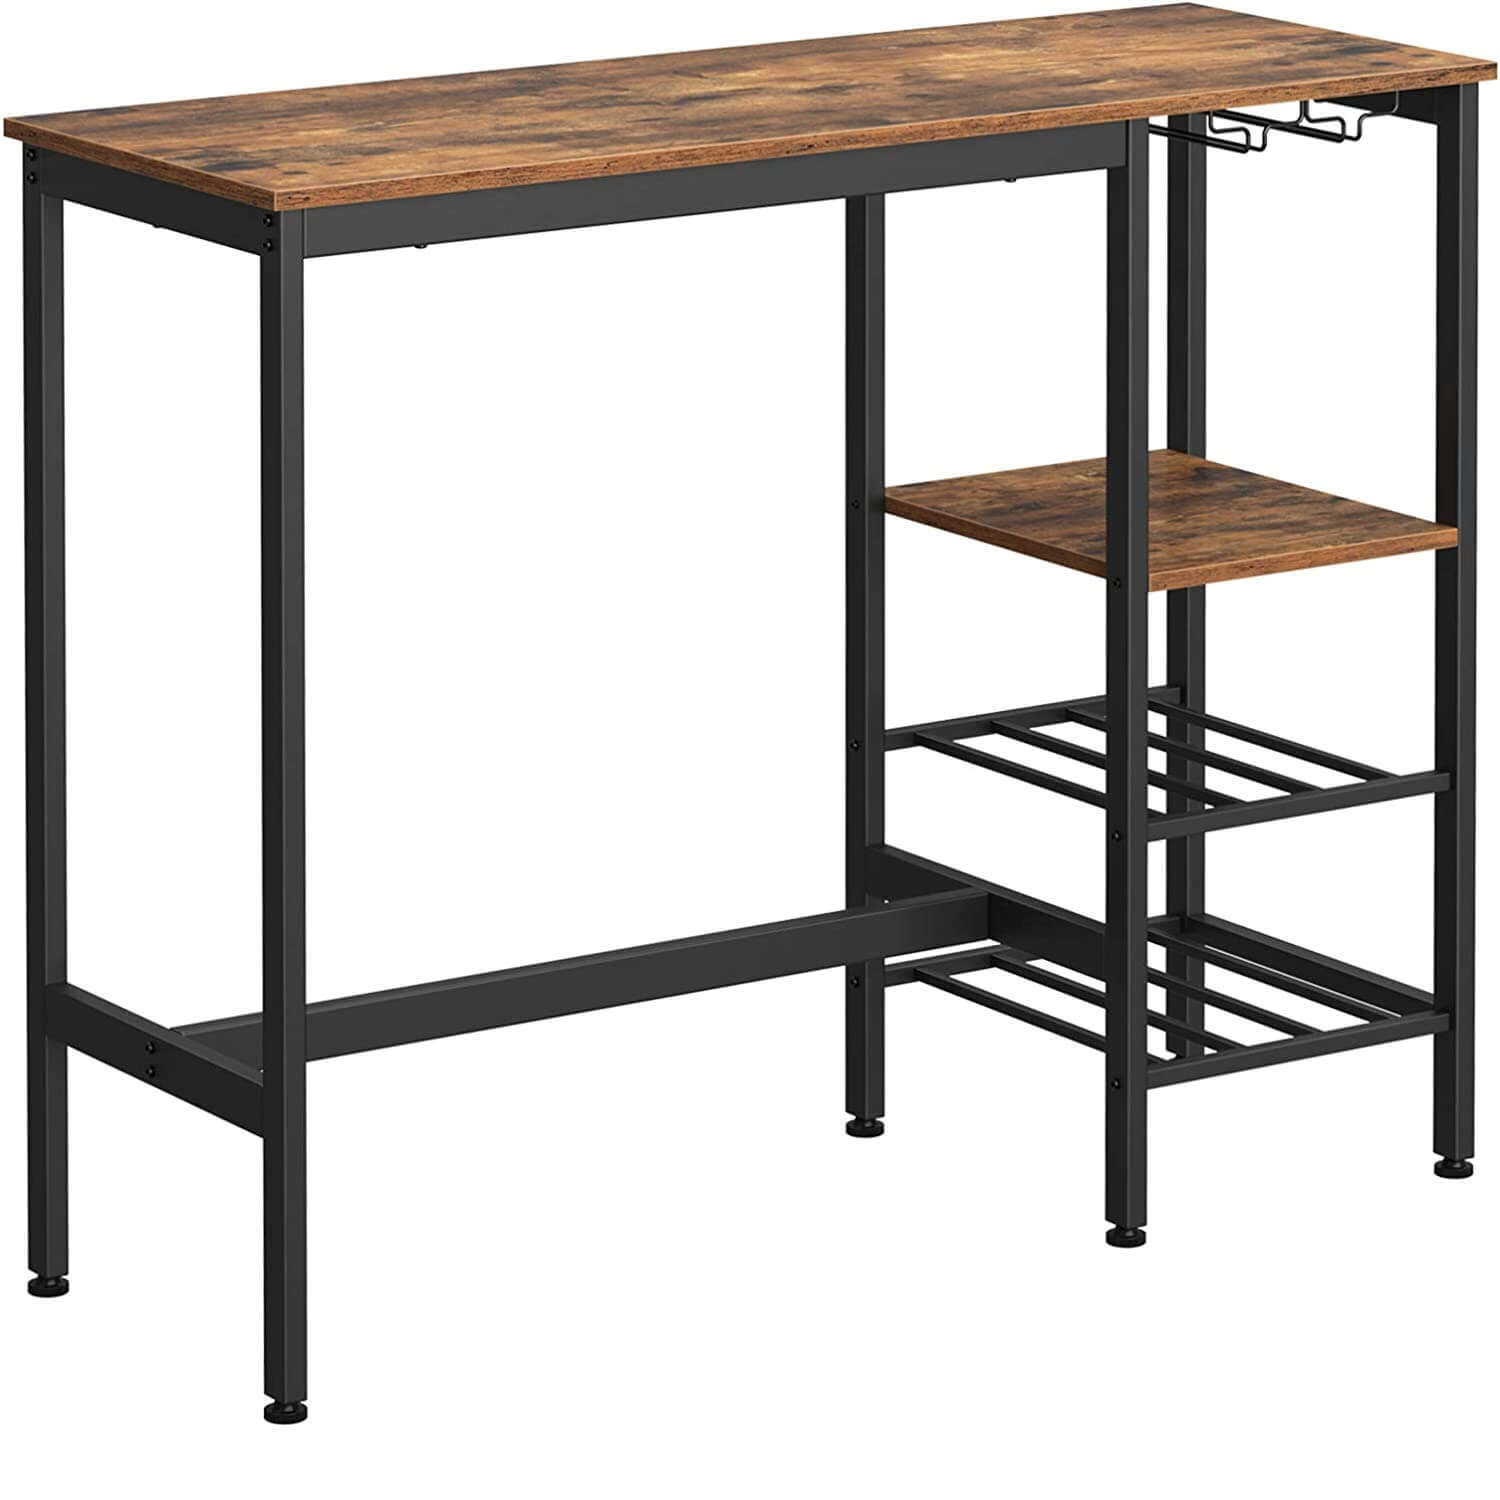 bāra galds industrial lbt013b01 110 x 40 x 90 cm ar 3 plauktiem brūns/melns